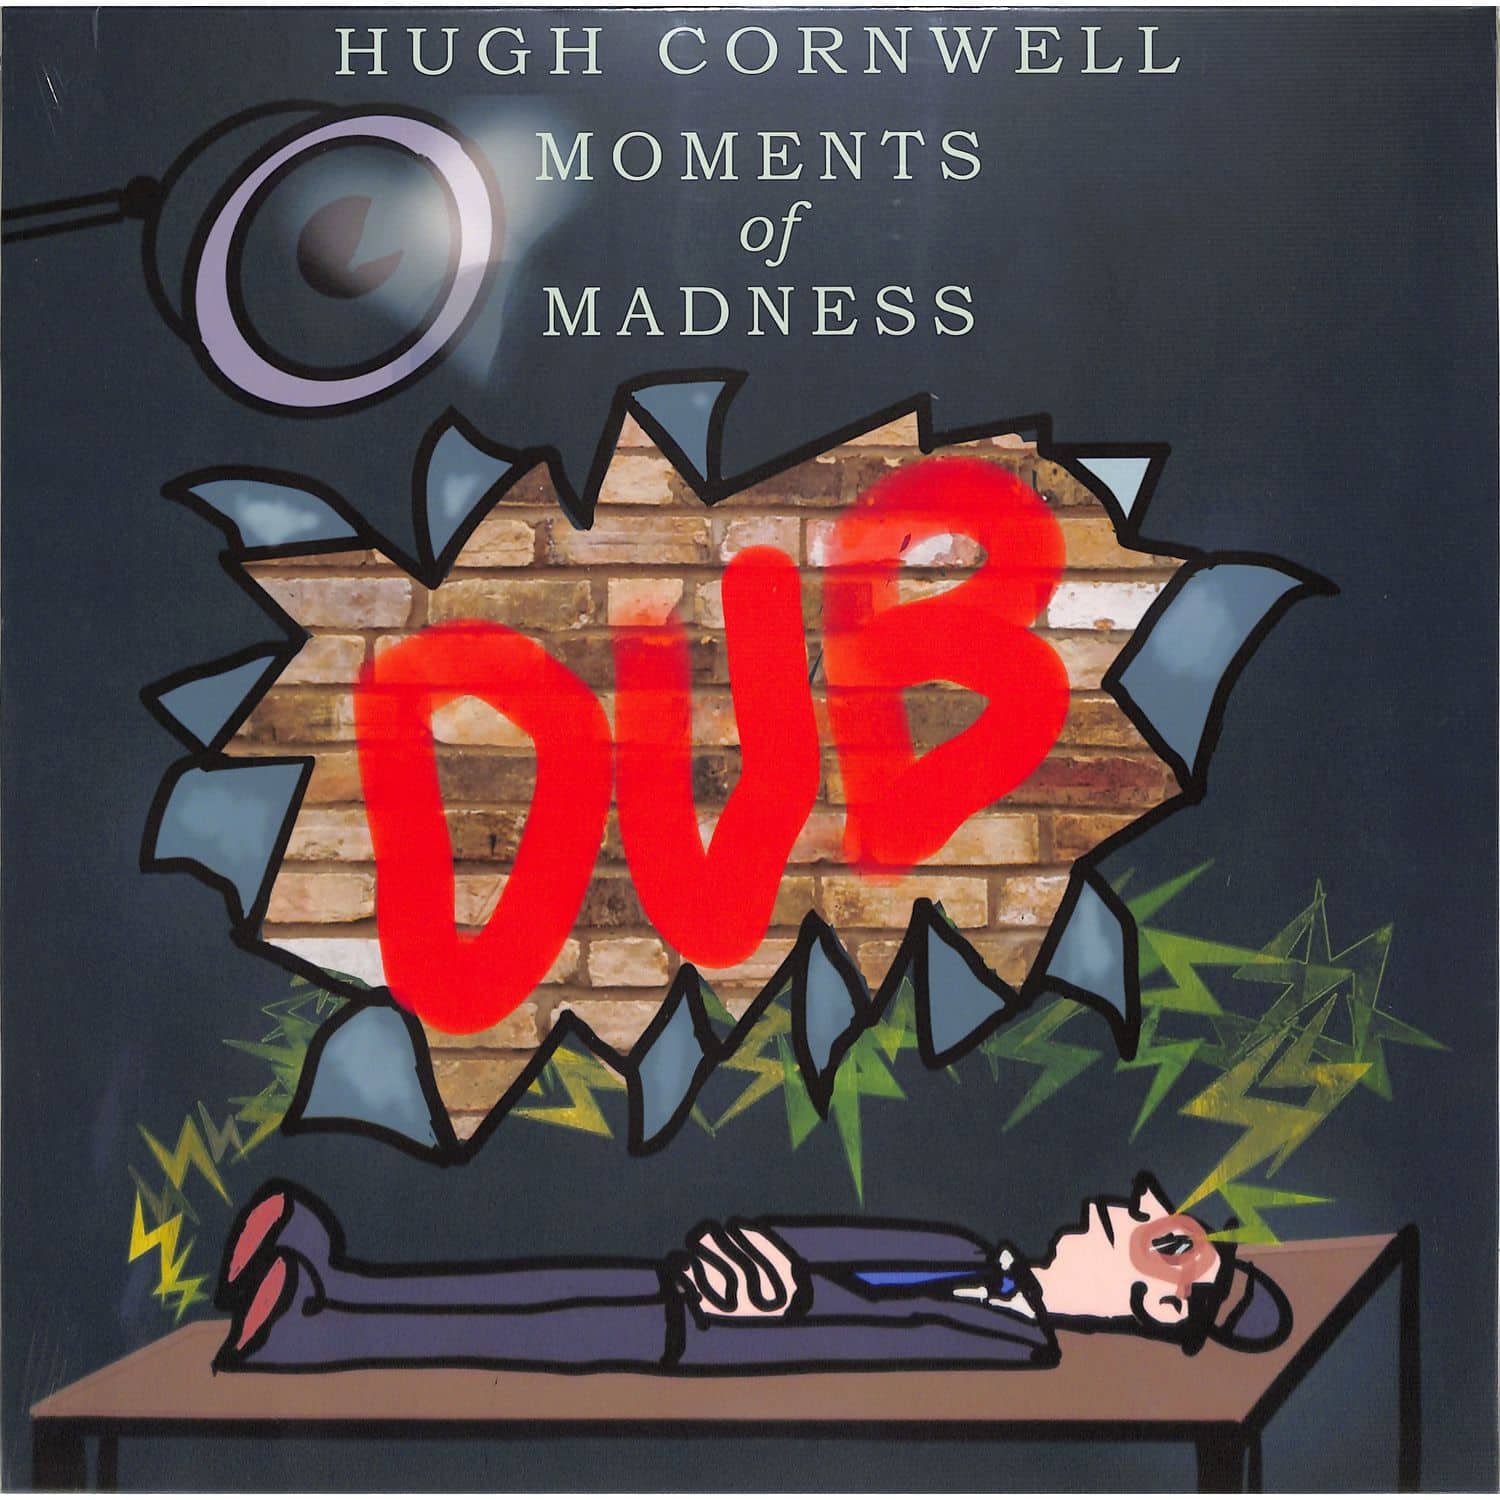 Hugh Cornwell - MOMENTS OF MADNESS DUB